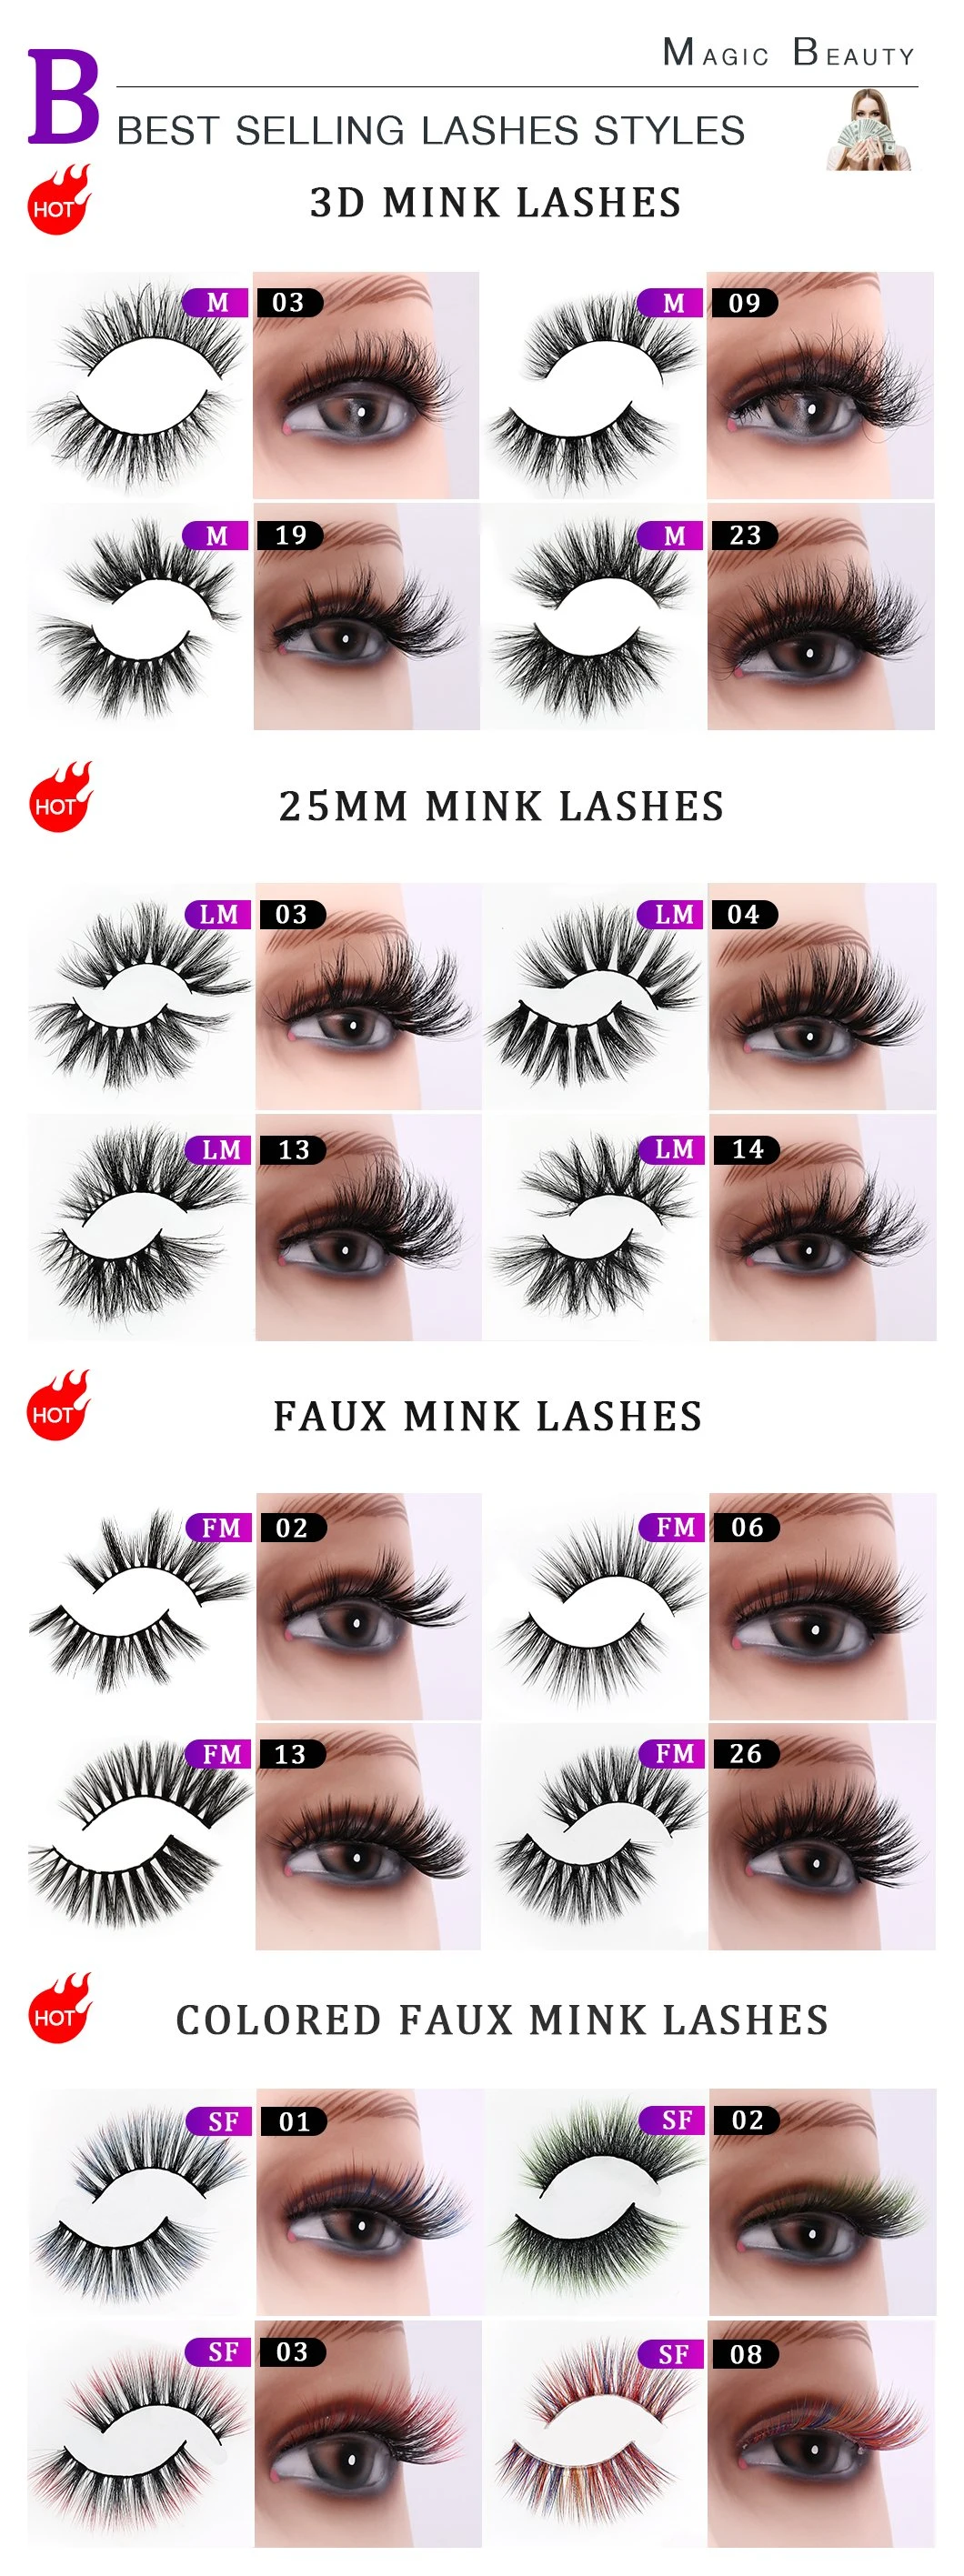 Popular Selling 100% Handmade 3D Mink Lashes Fake Eyelashes with Custom Box